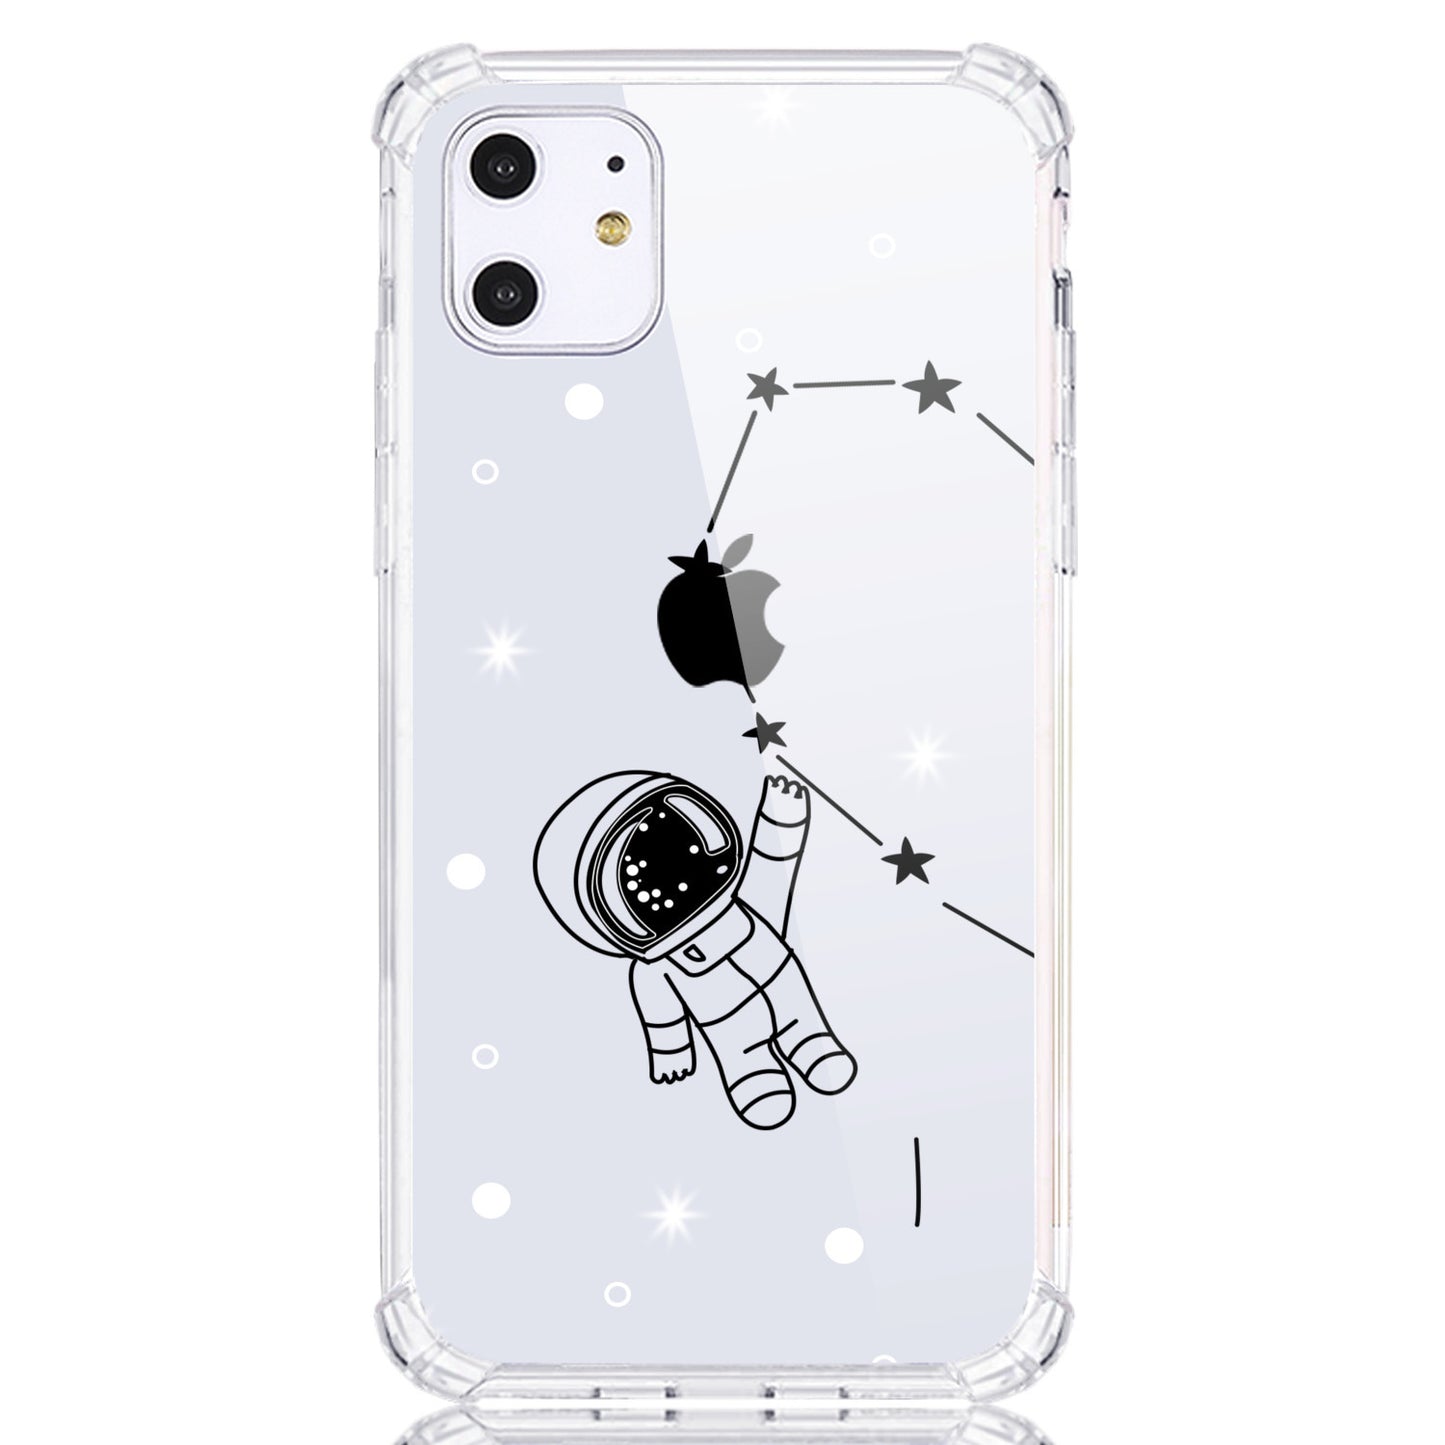 Astronaute de dessin animé se connecter avec un couple d'illustration de coeur Coque et skin adhésive iPhone